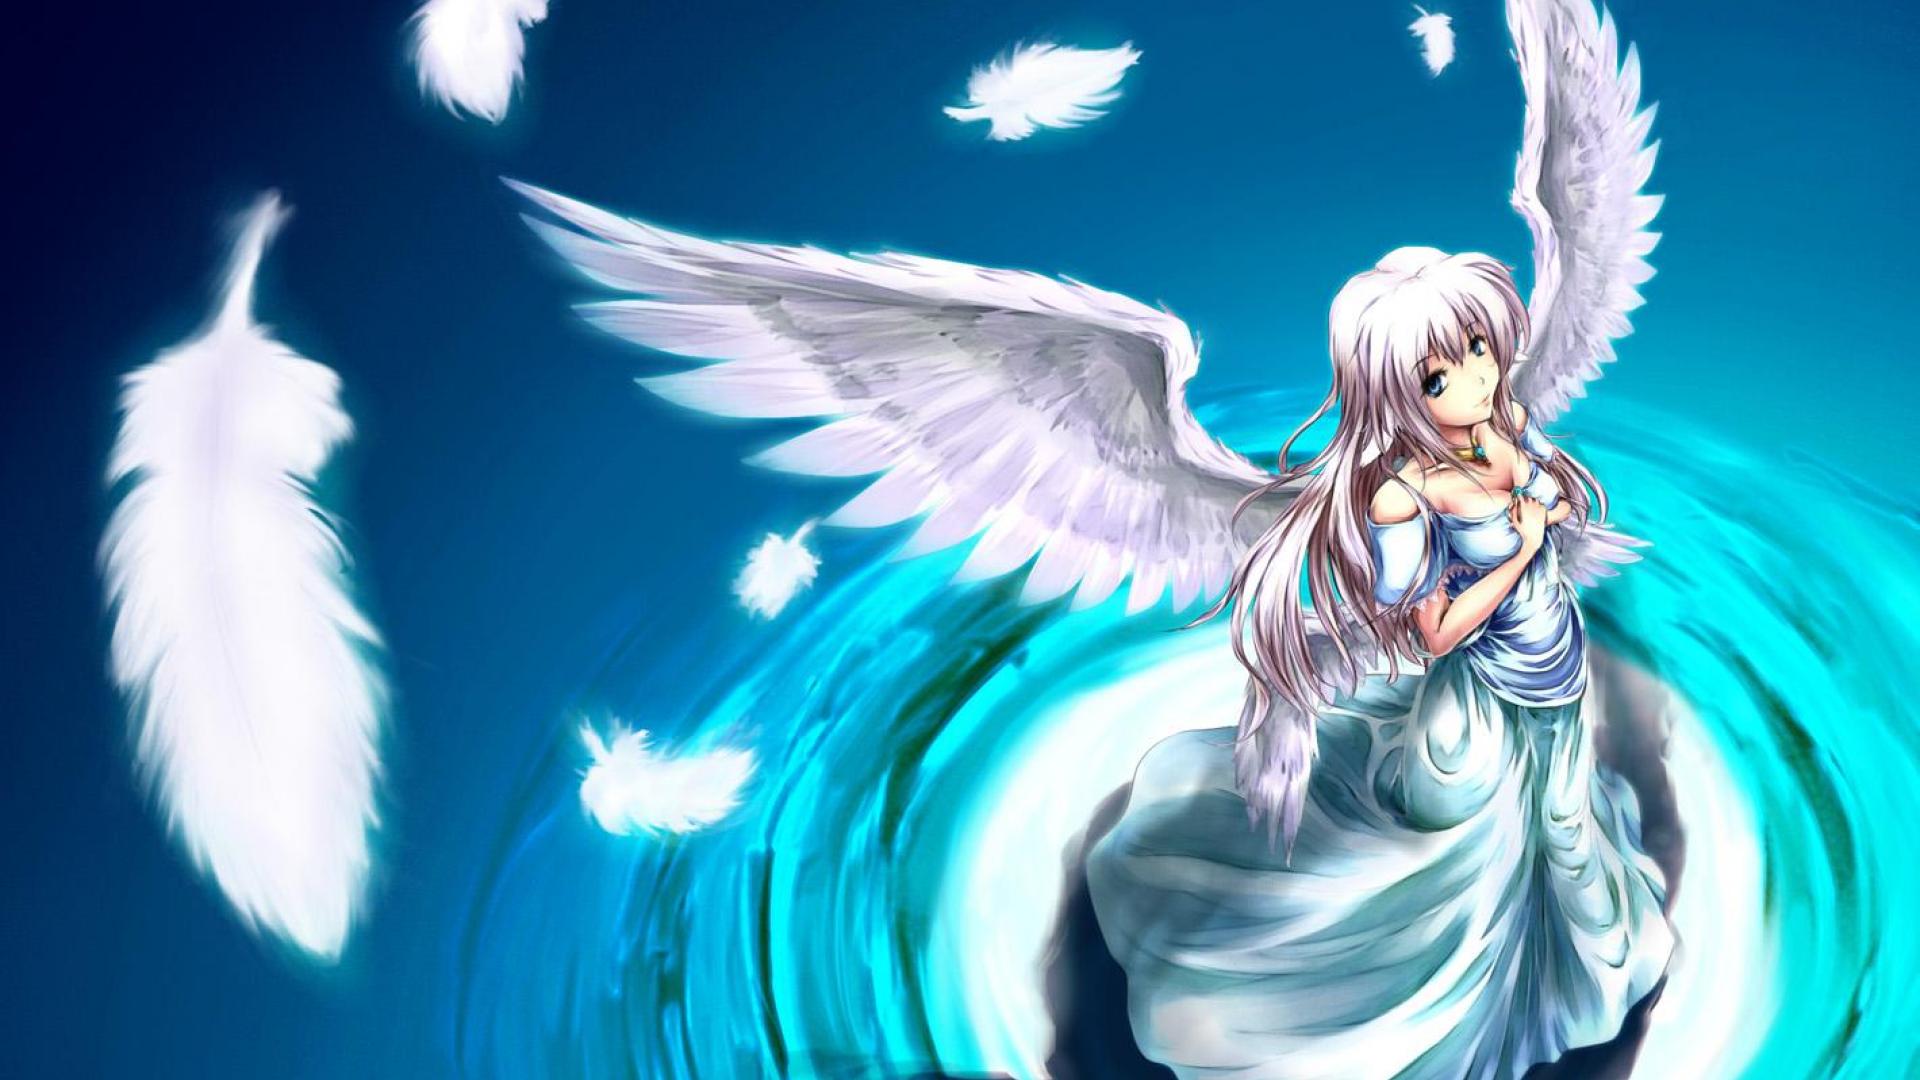 anime angel wallpaper,ángel,cg artwork,criatura sobrenatural,personaje de ficción,anime